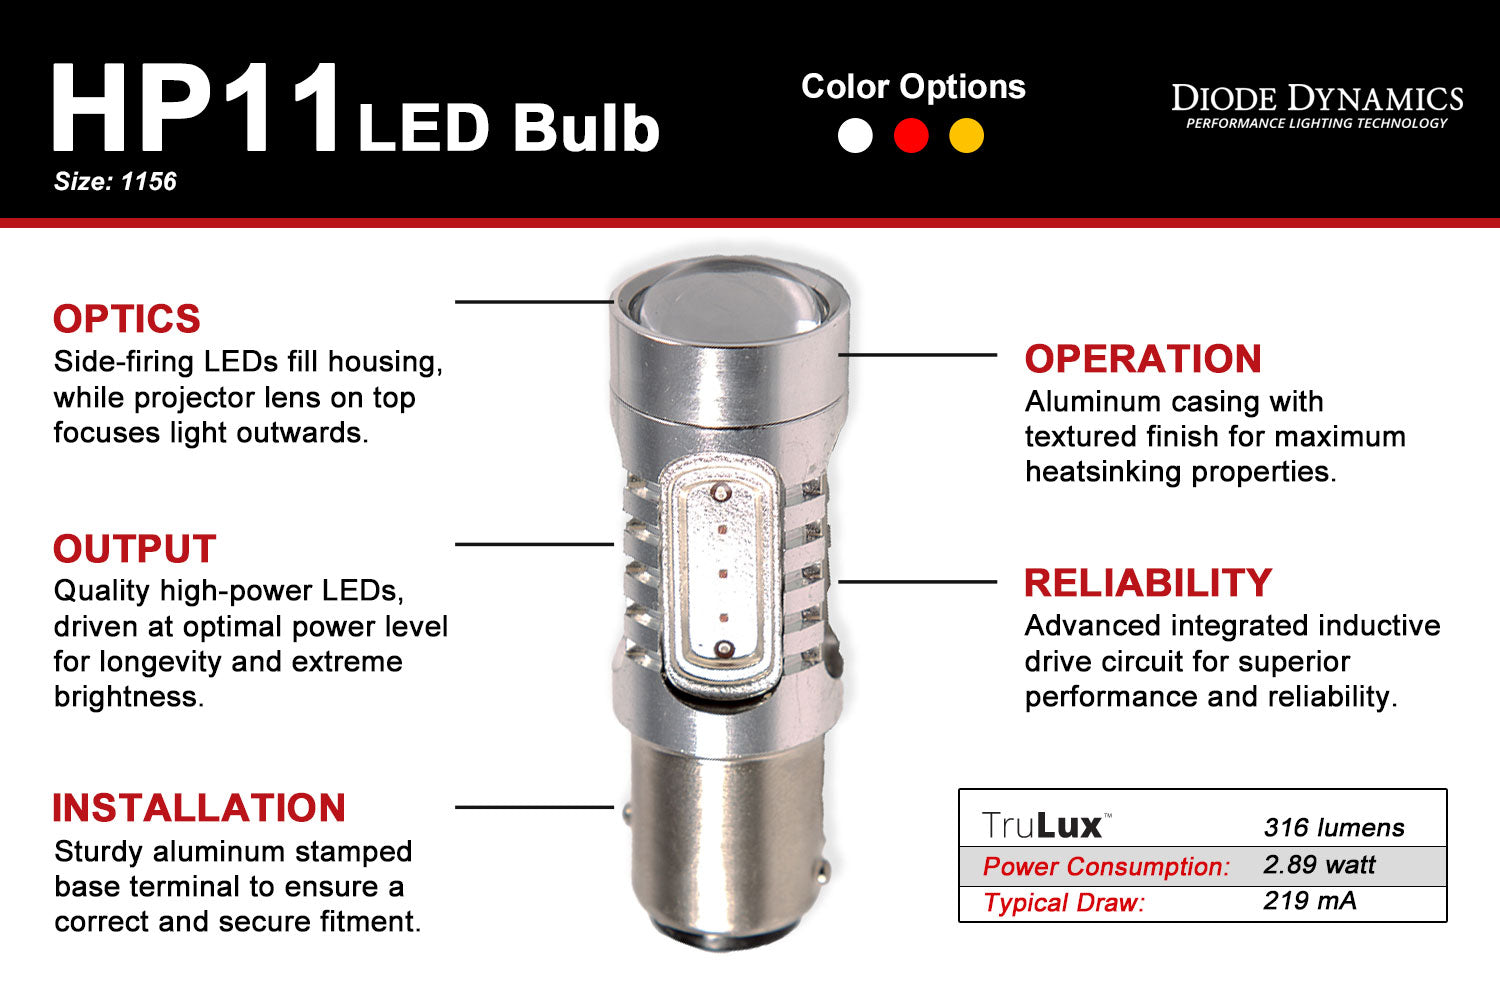 1156 LED Bulb HP11 Diode Dynamics-